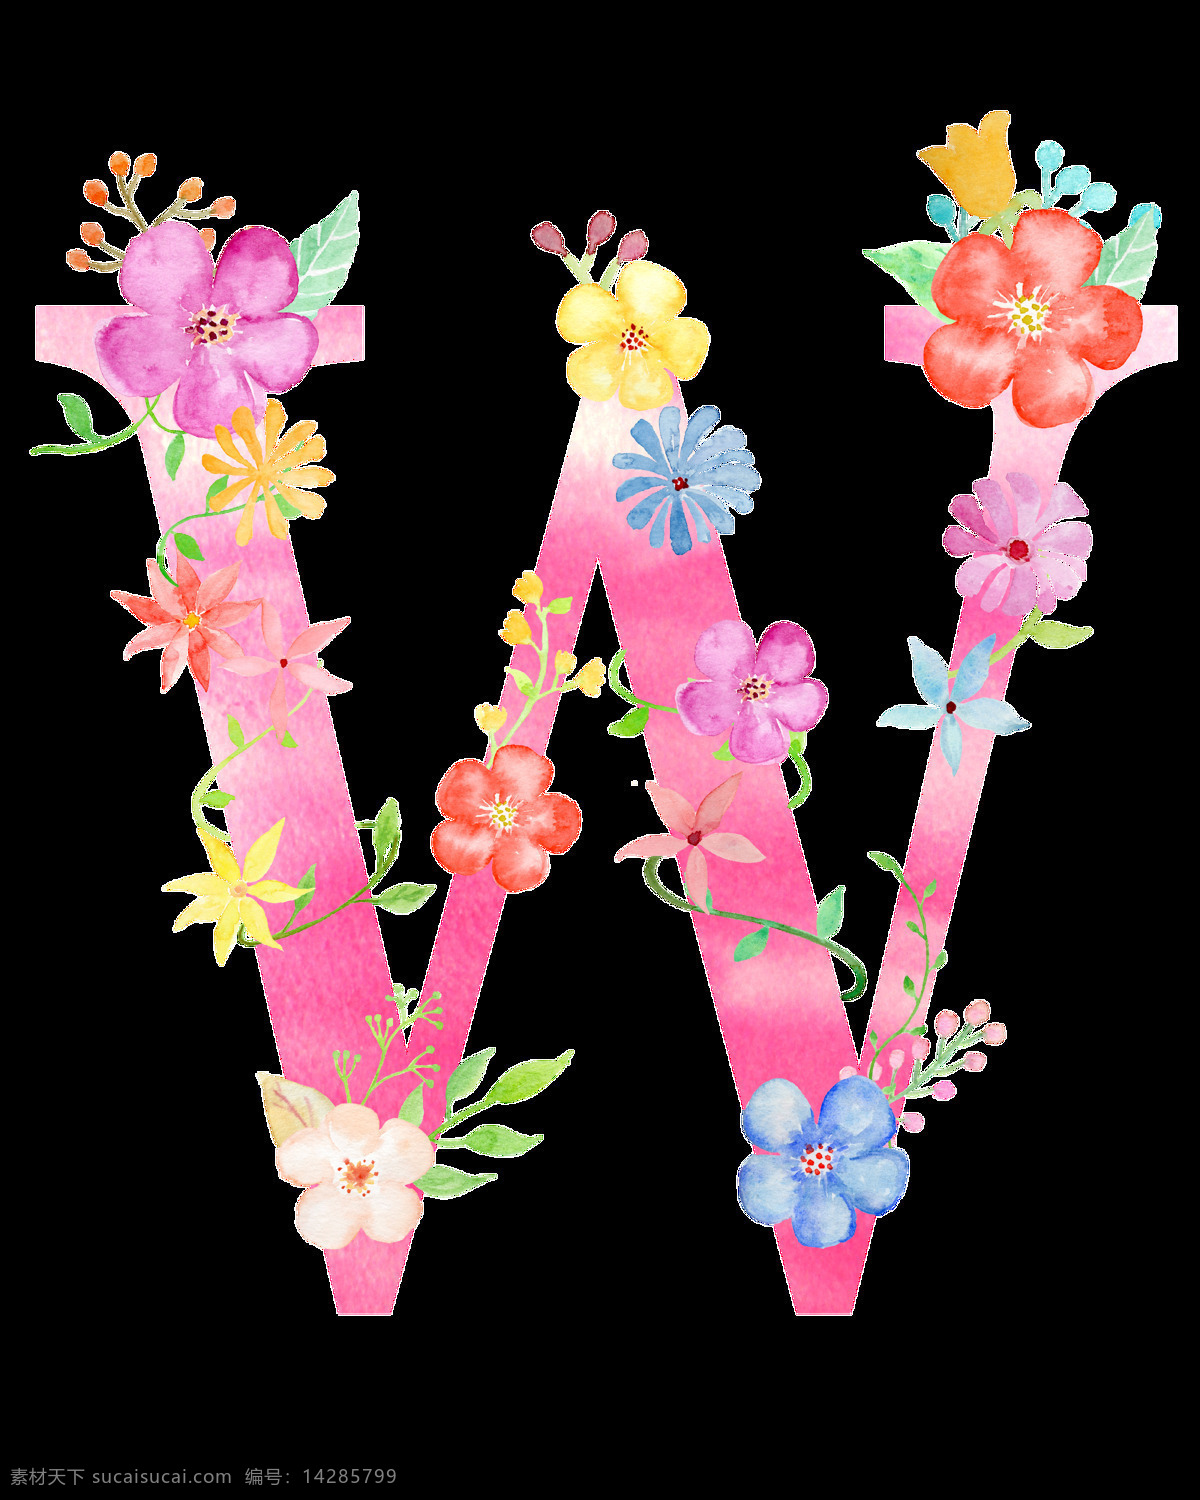 字母 彩绘 涂鸦 秀 装饰 w 粉色装饰 玫瑰花 月季花